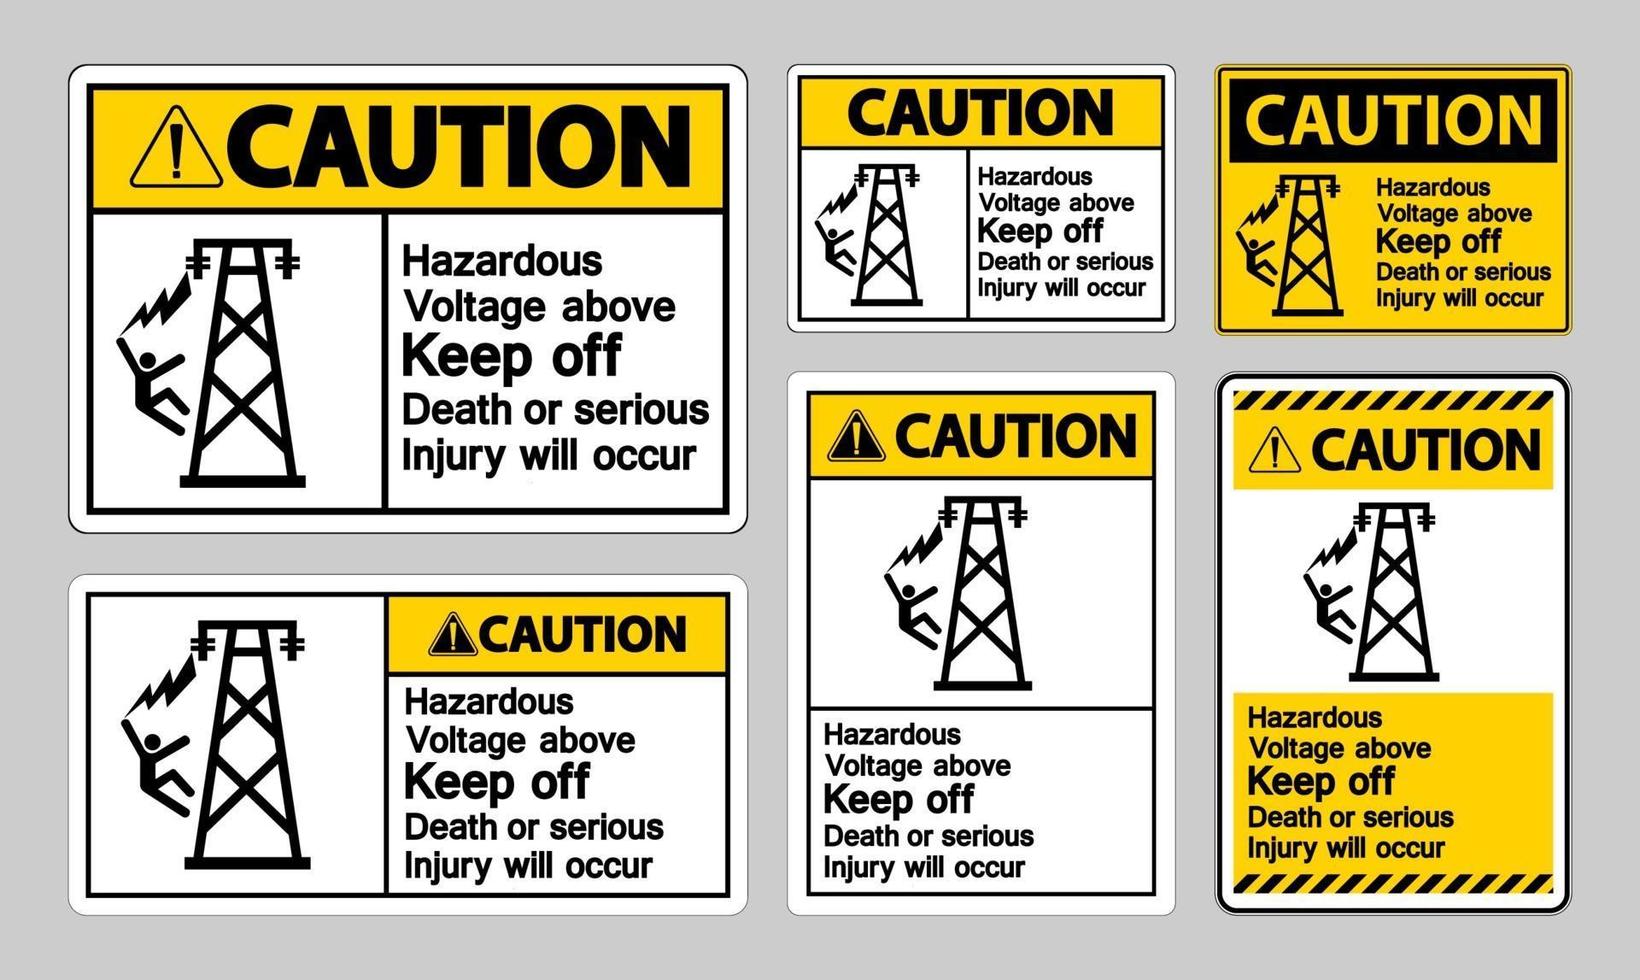 varning farlig spänning ovan håll ut död eller allvarliga skador kommer att uppstå symbolskylt vektor